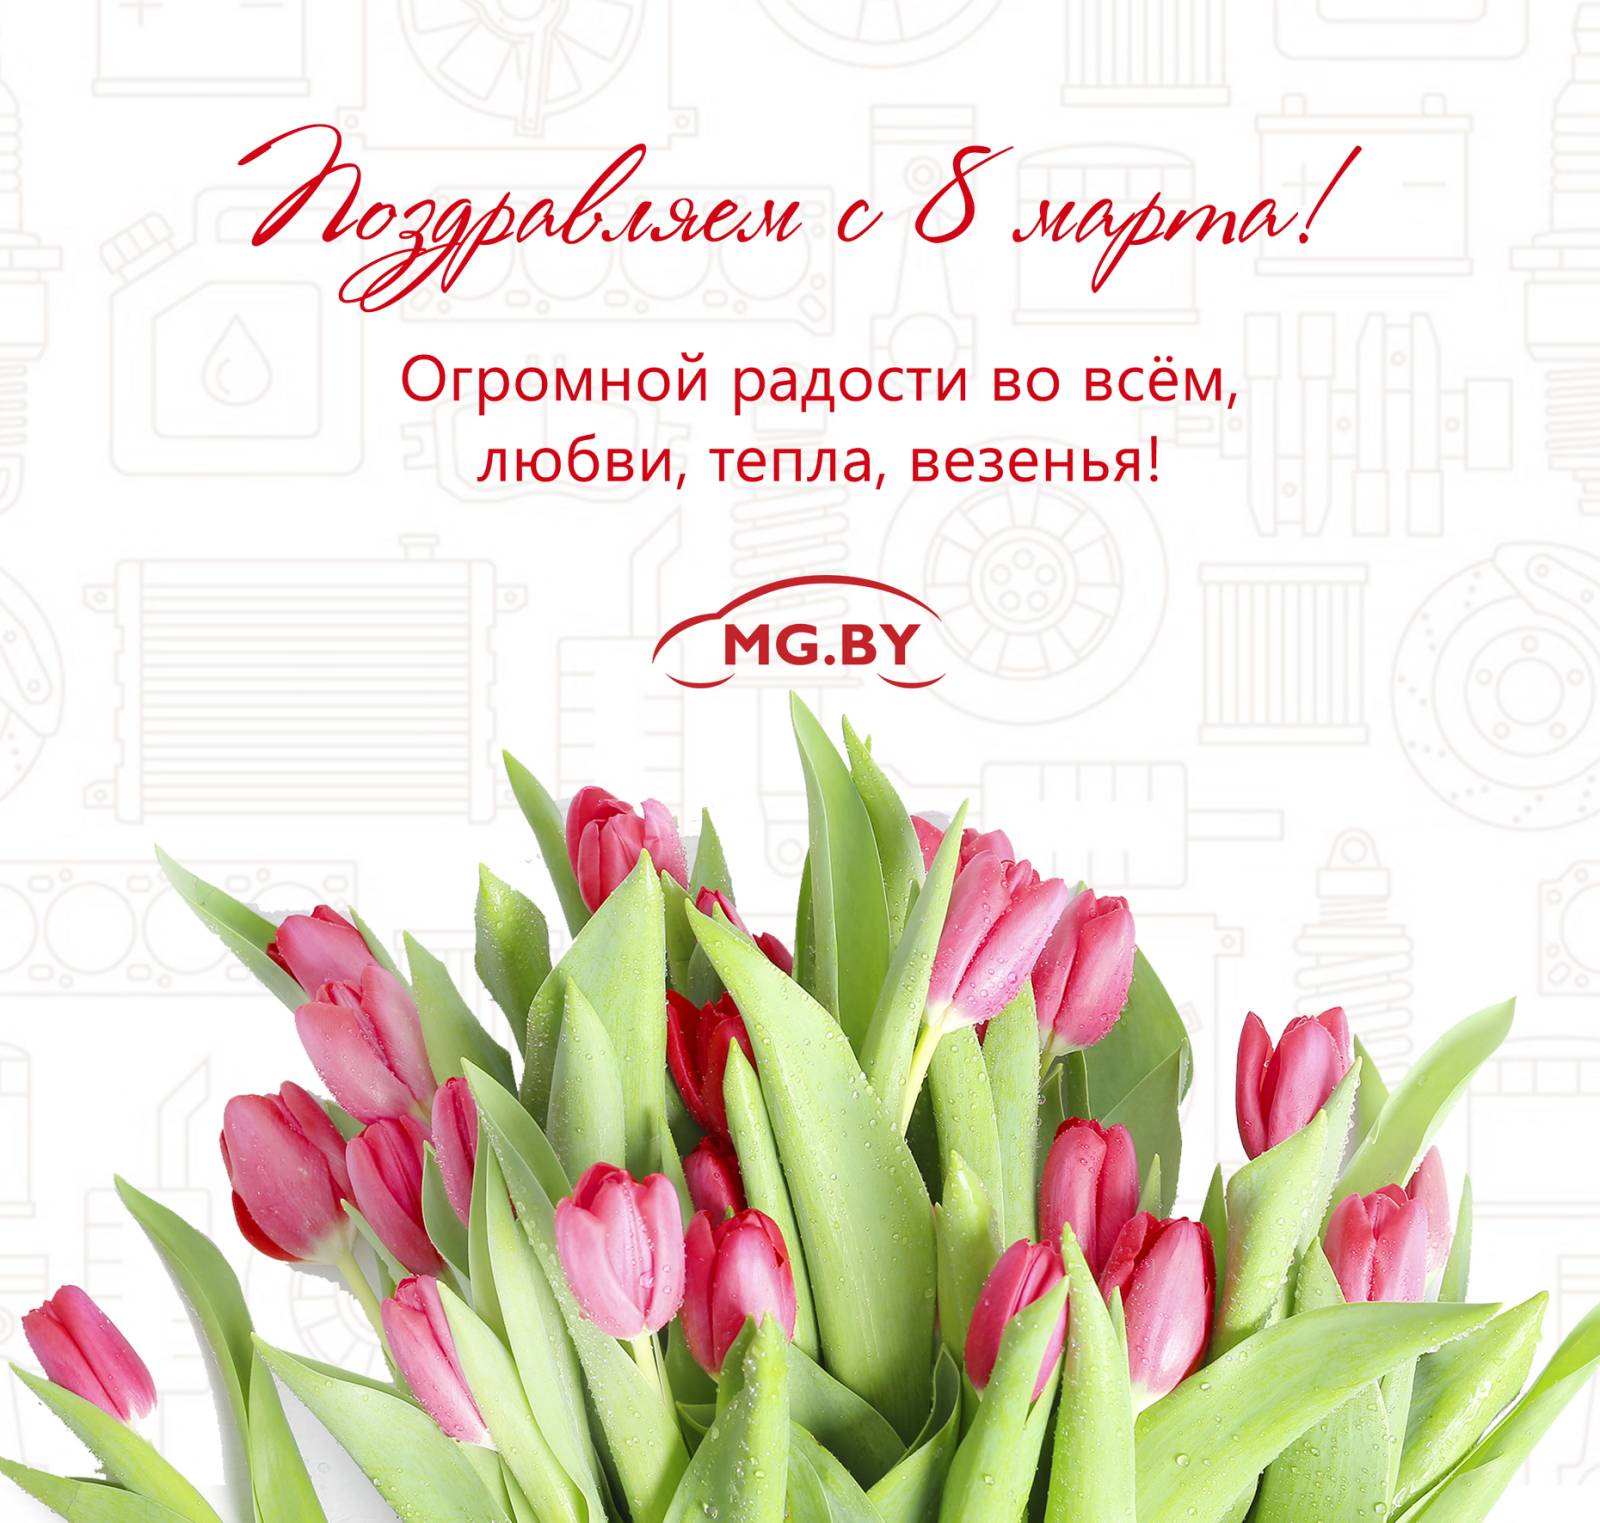 Компания MG.BY искренне поздравляет милых женщин с Международным праздником 8 марта!